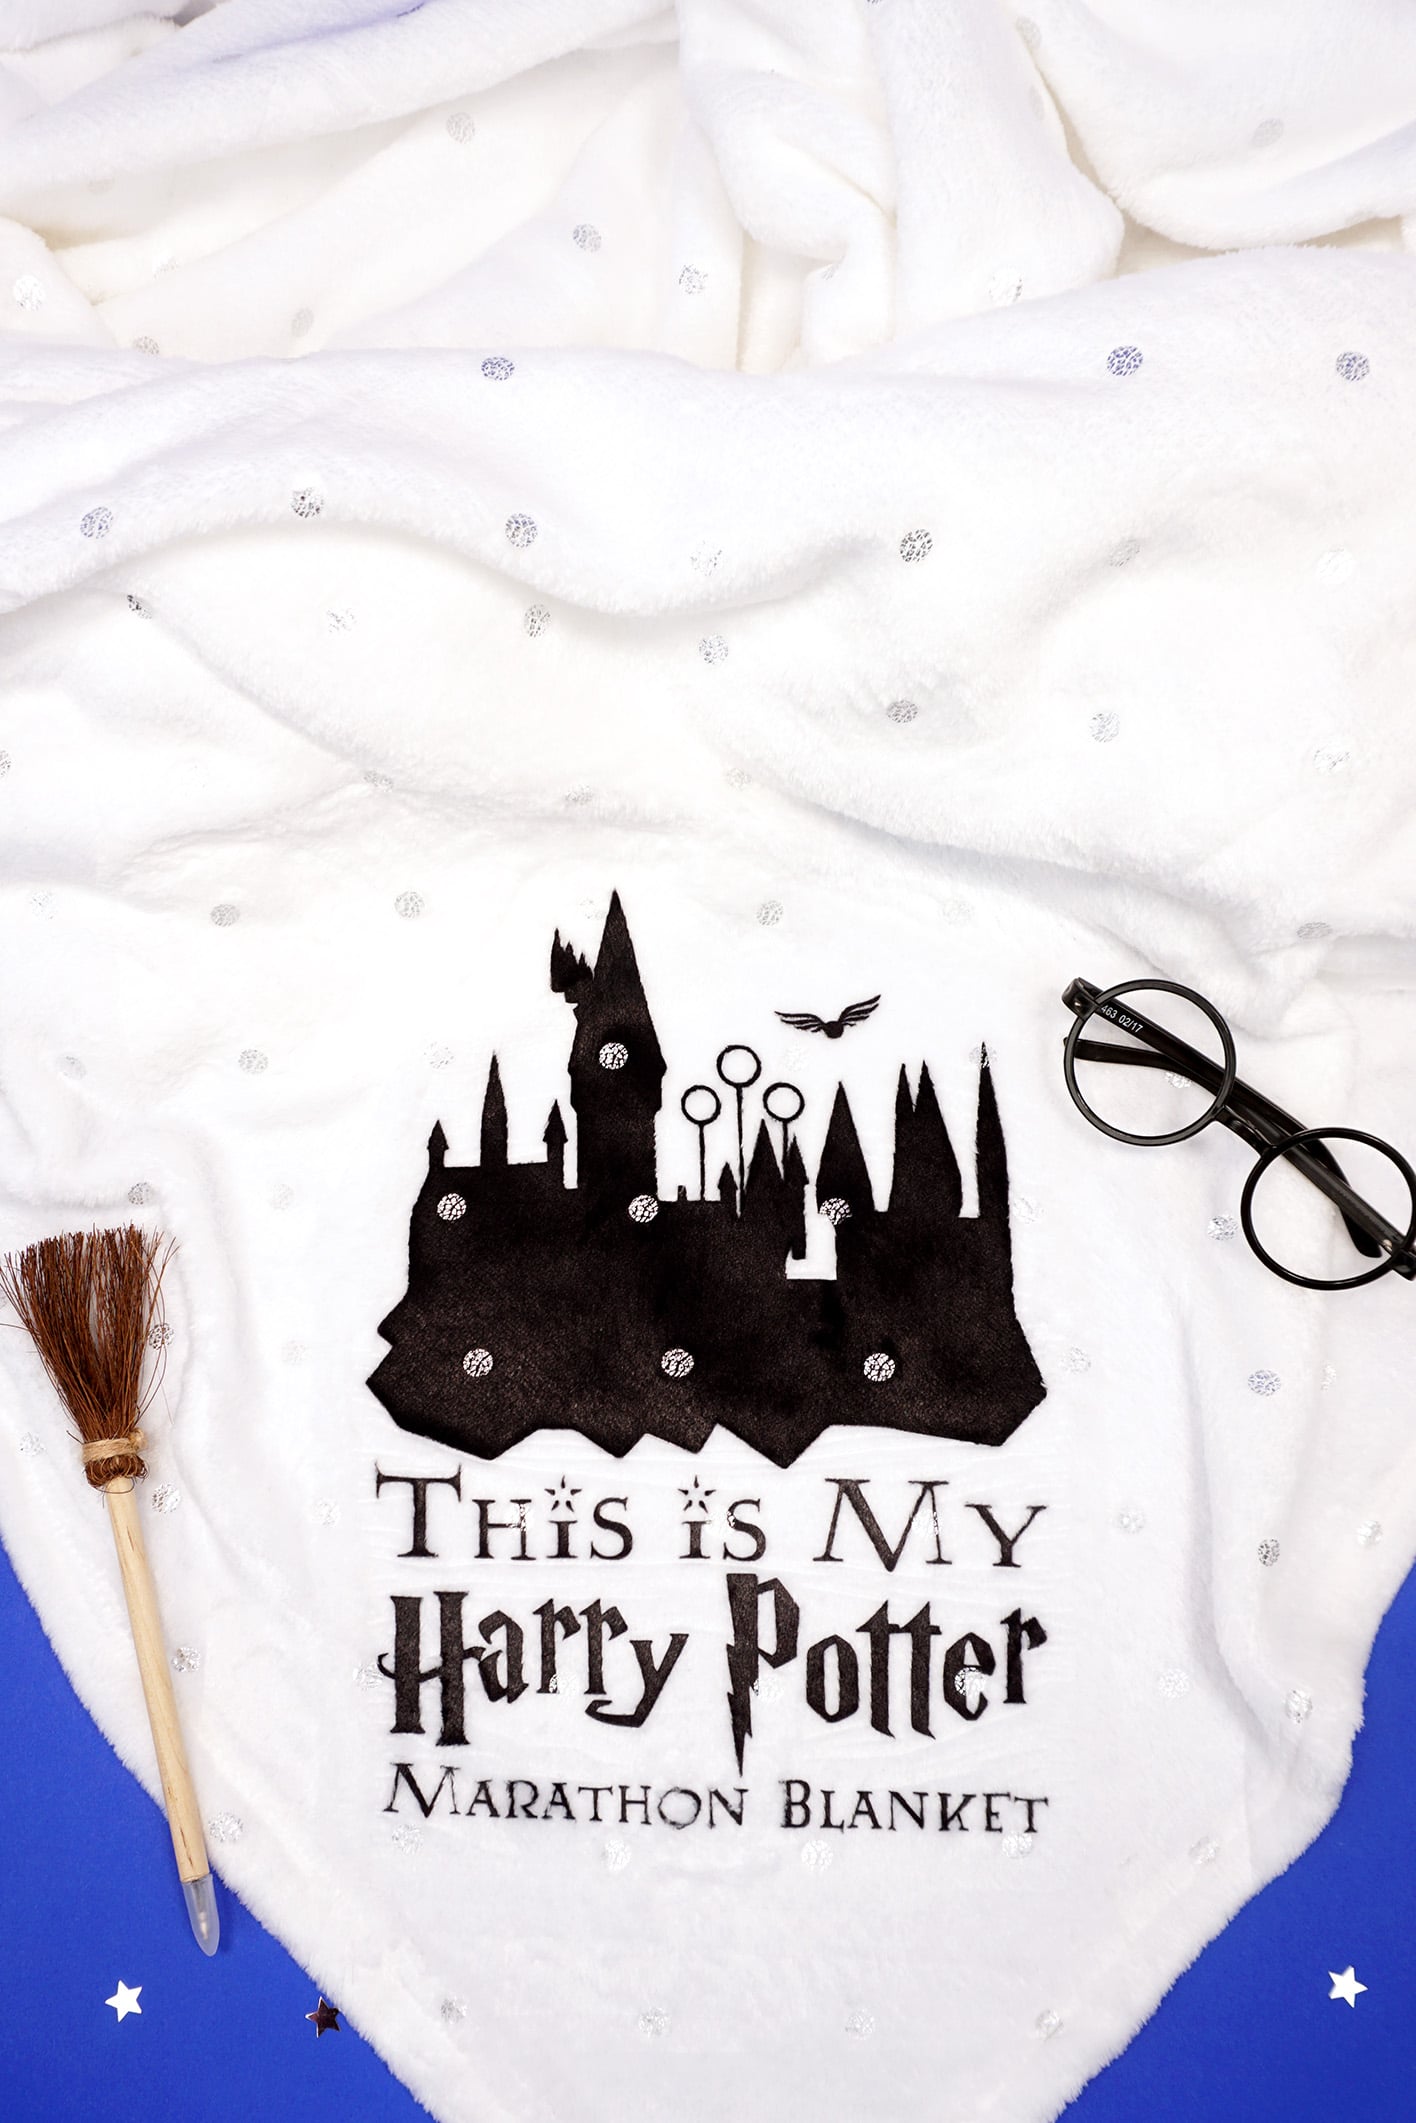 Free Harry Potter SVG + Marathon Blanket